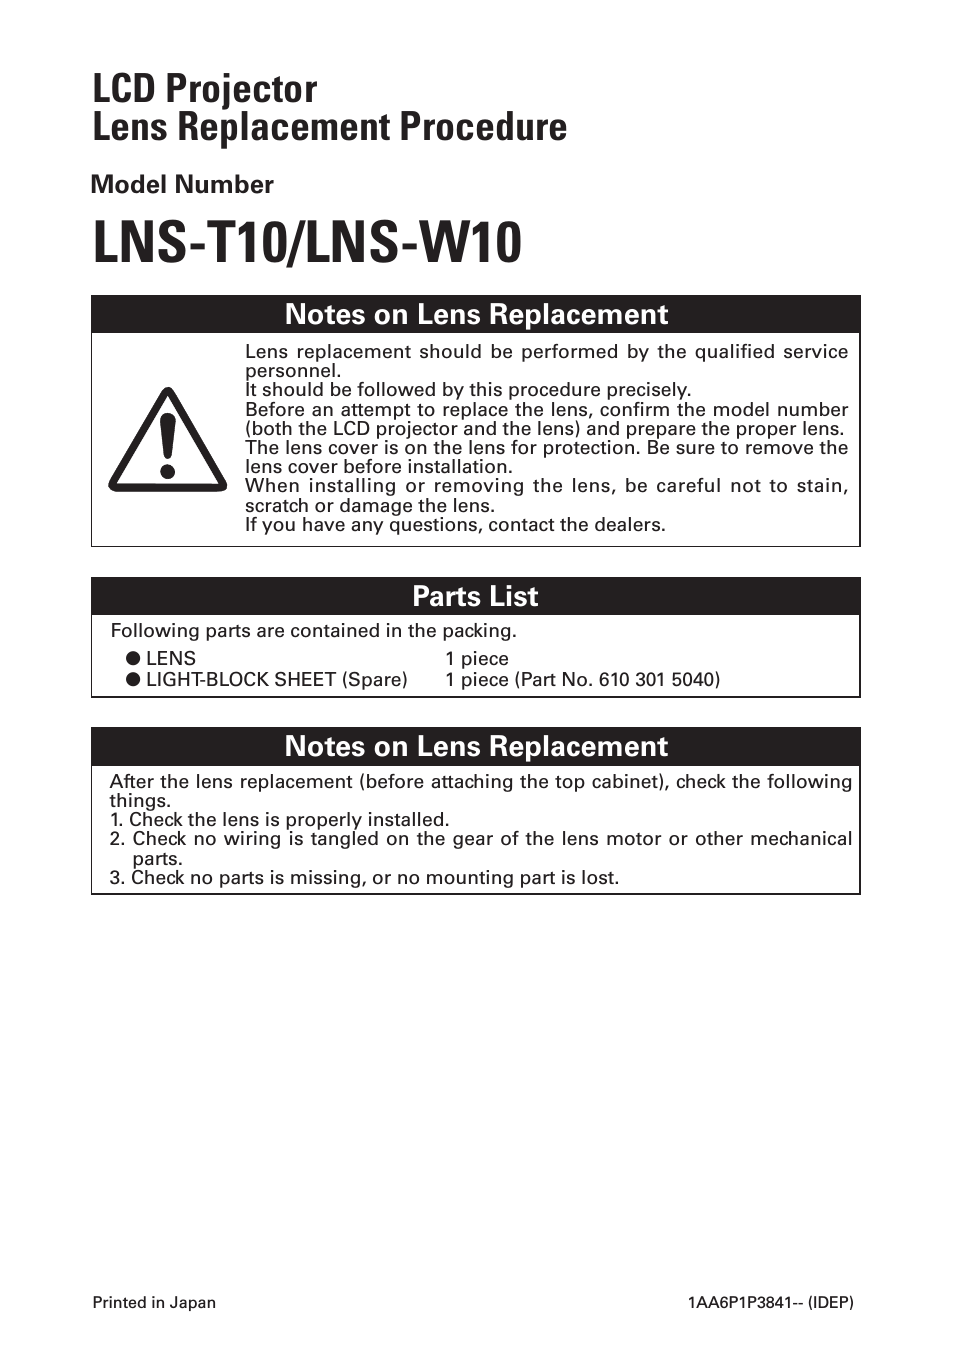 LNS-W10